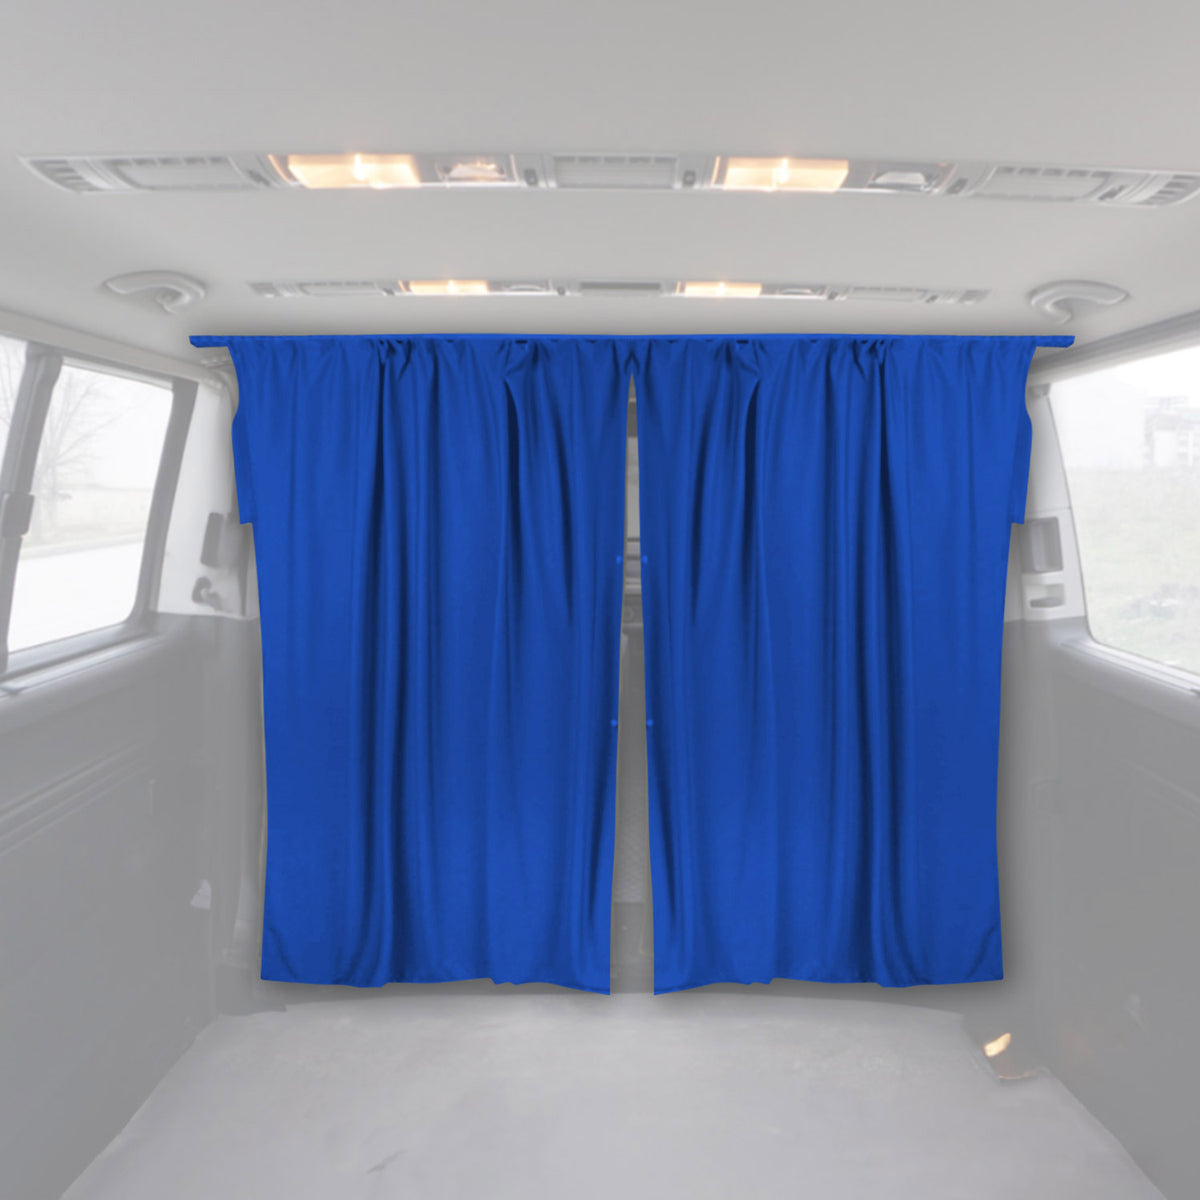 Fahrerhaus Führerhaus Gardinen Sonnenschutz für Renault Kangoo Blau 2tlg